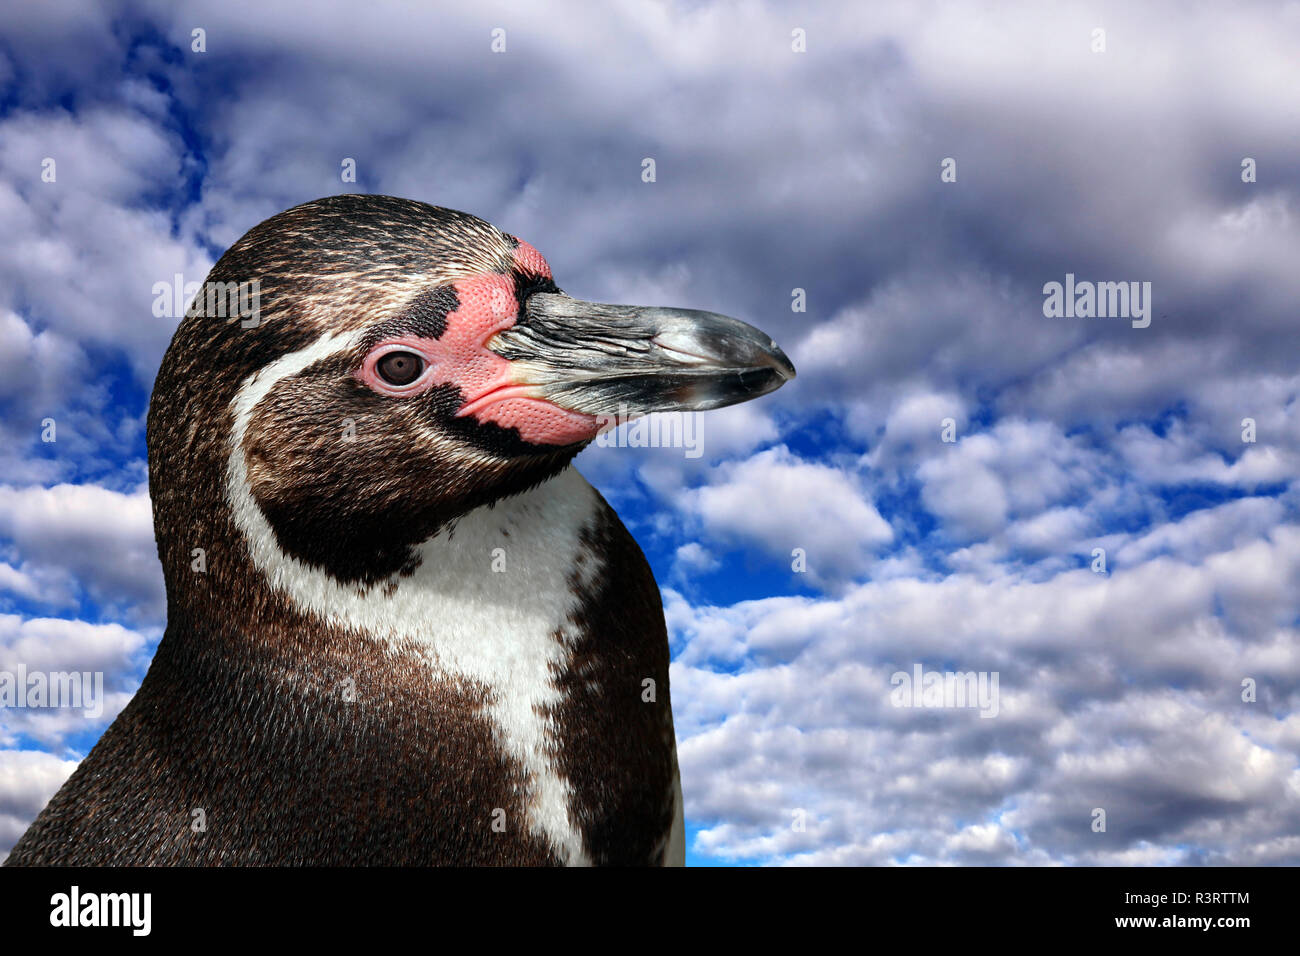 Humboldt Pinguine spheniscus Humboldti vor der blau-weißen Wolke Himmel Stockfoto